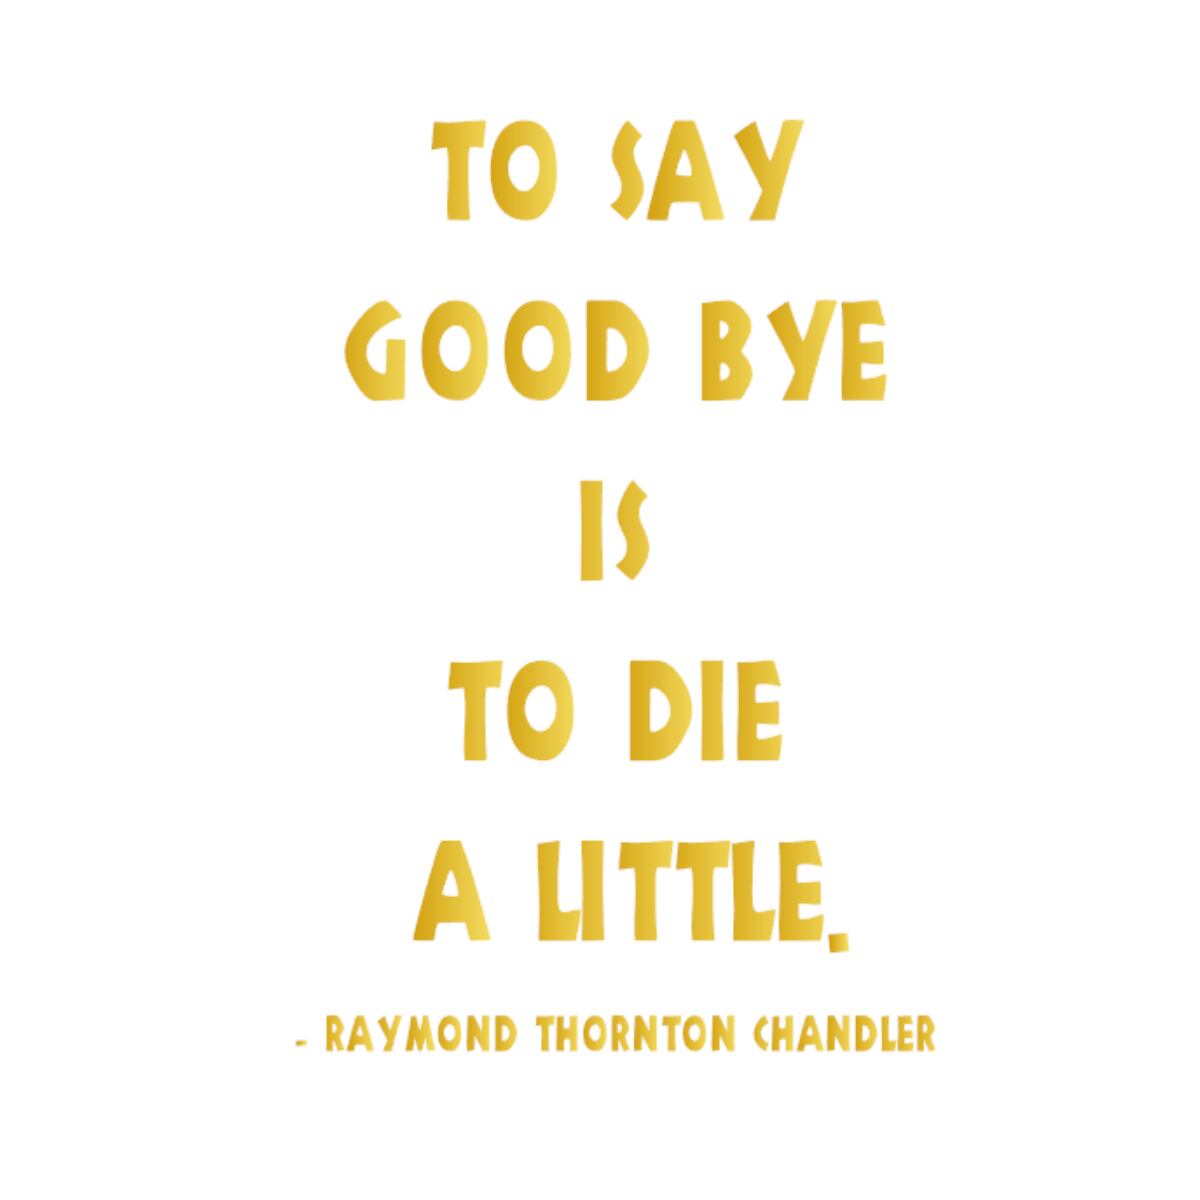 ウォールステッカー 名言 金 光沢 レイモンド チャンドラー 英字 To Say Good Bye Is To Die A Little Iby アイバイ ウォールステッカー 通販